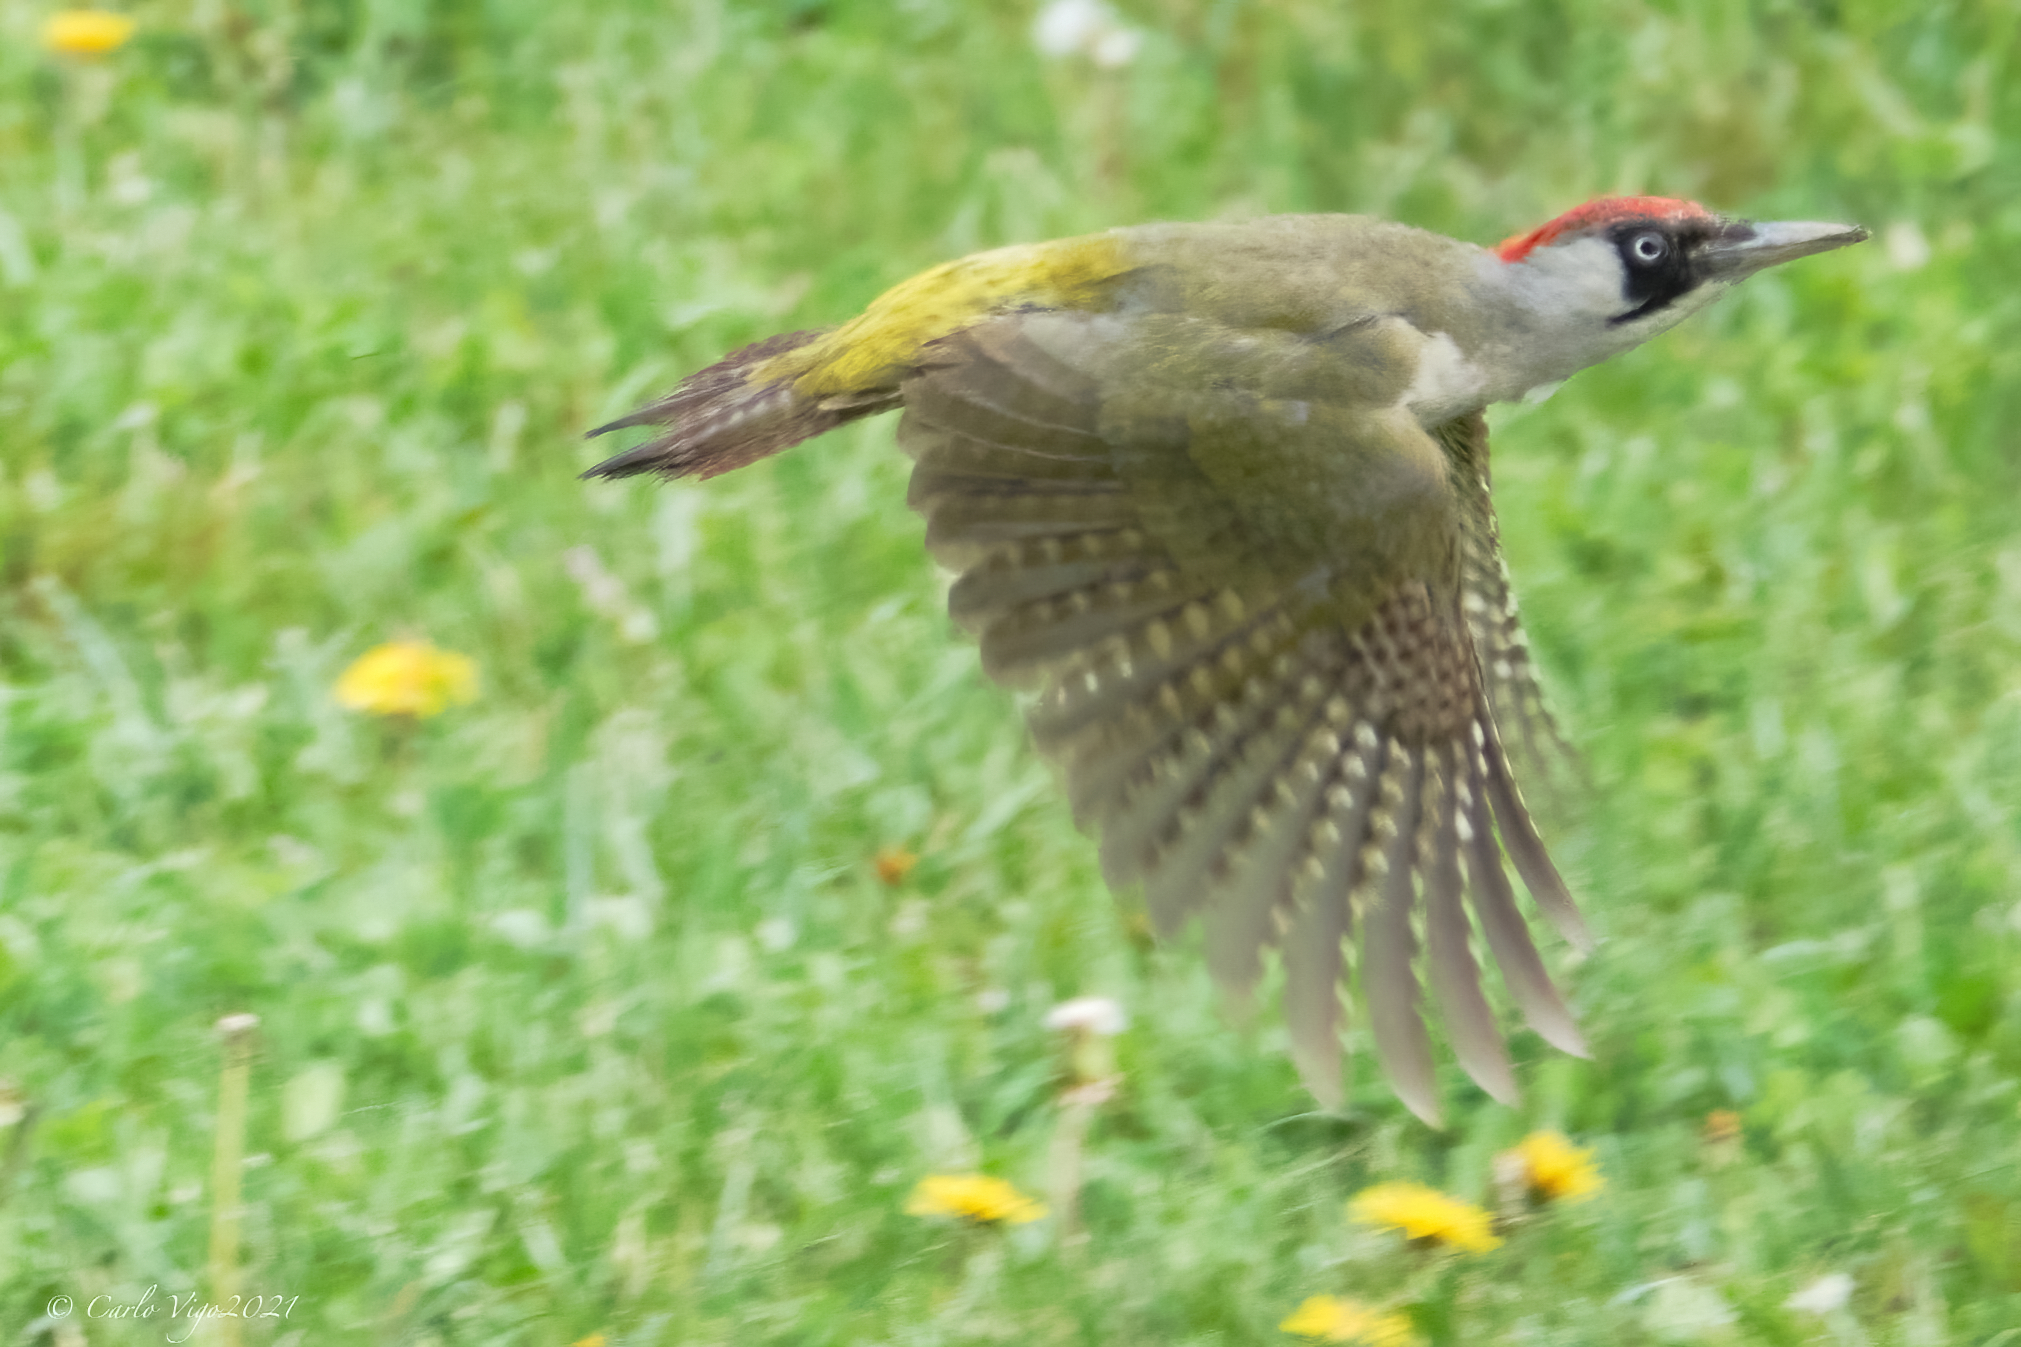 Green woodpecker in flight...